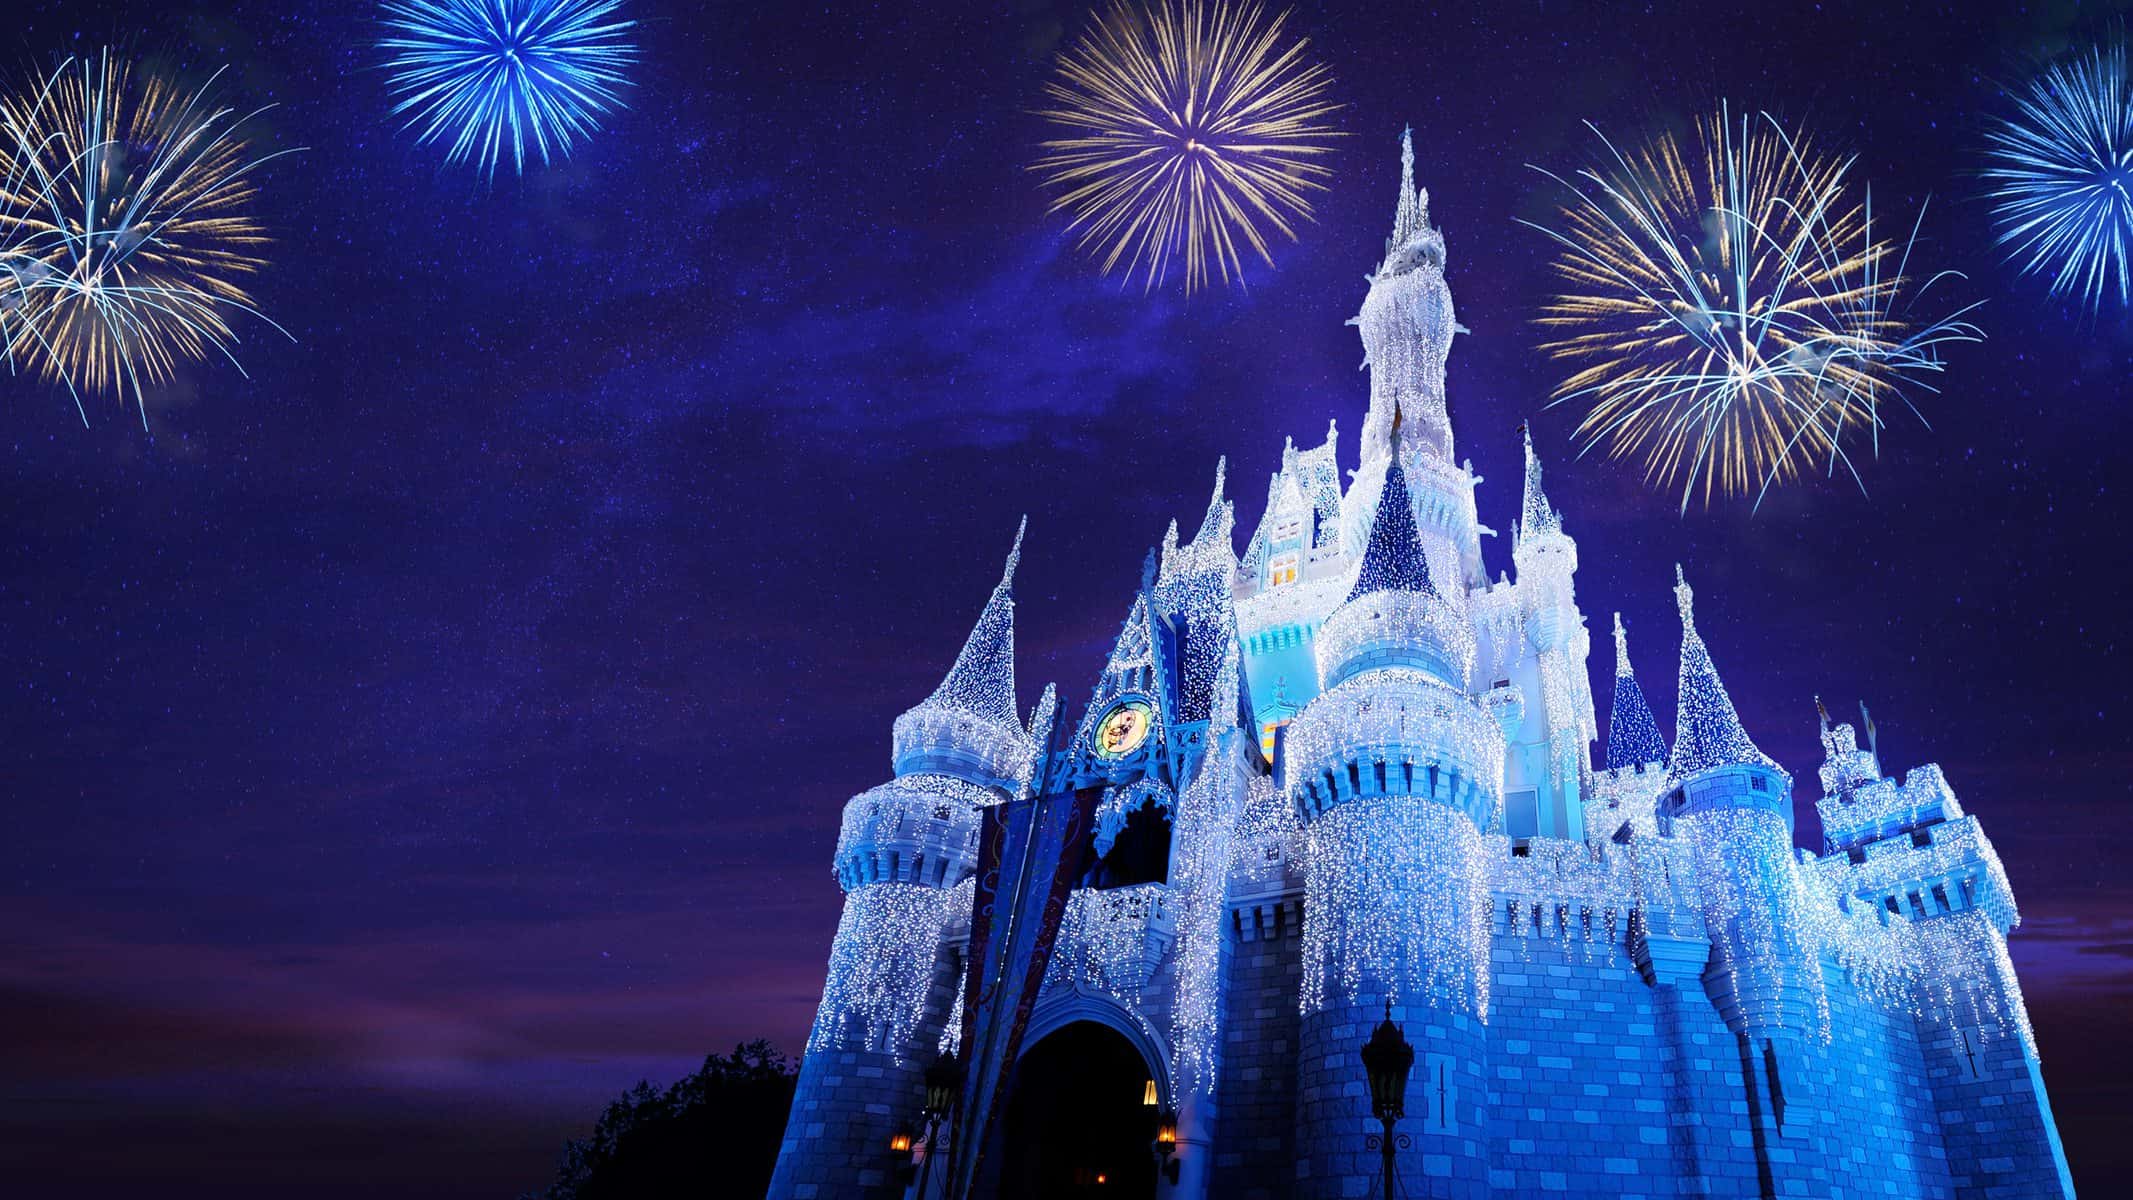 Holiday Entertainment Begins November 3 At Magic Kingdom